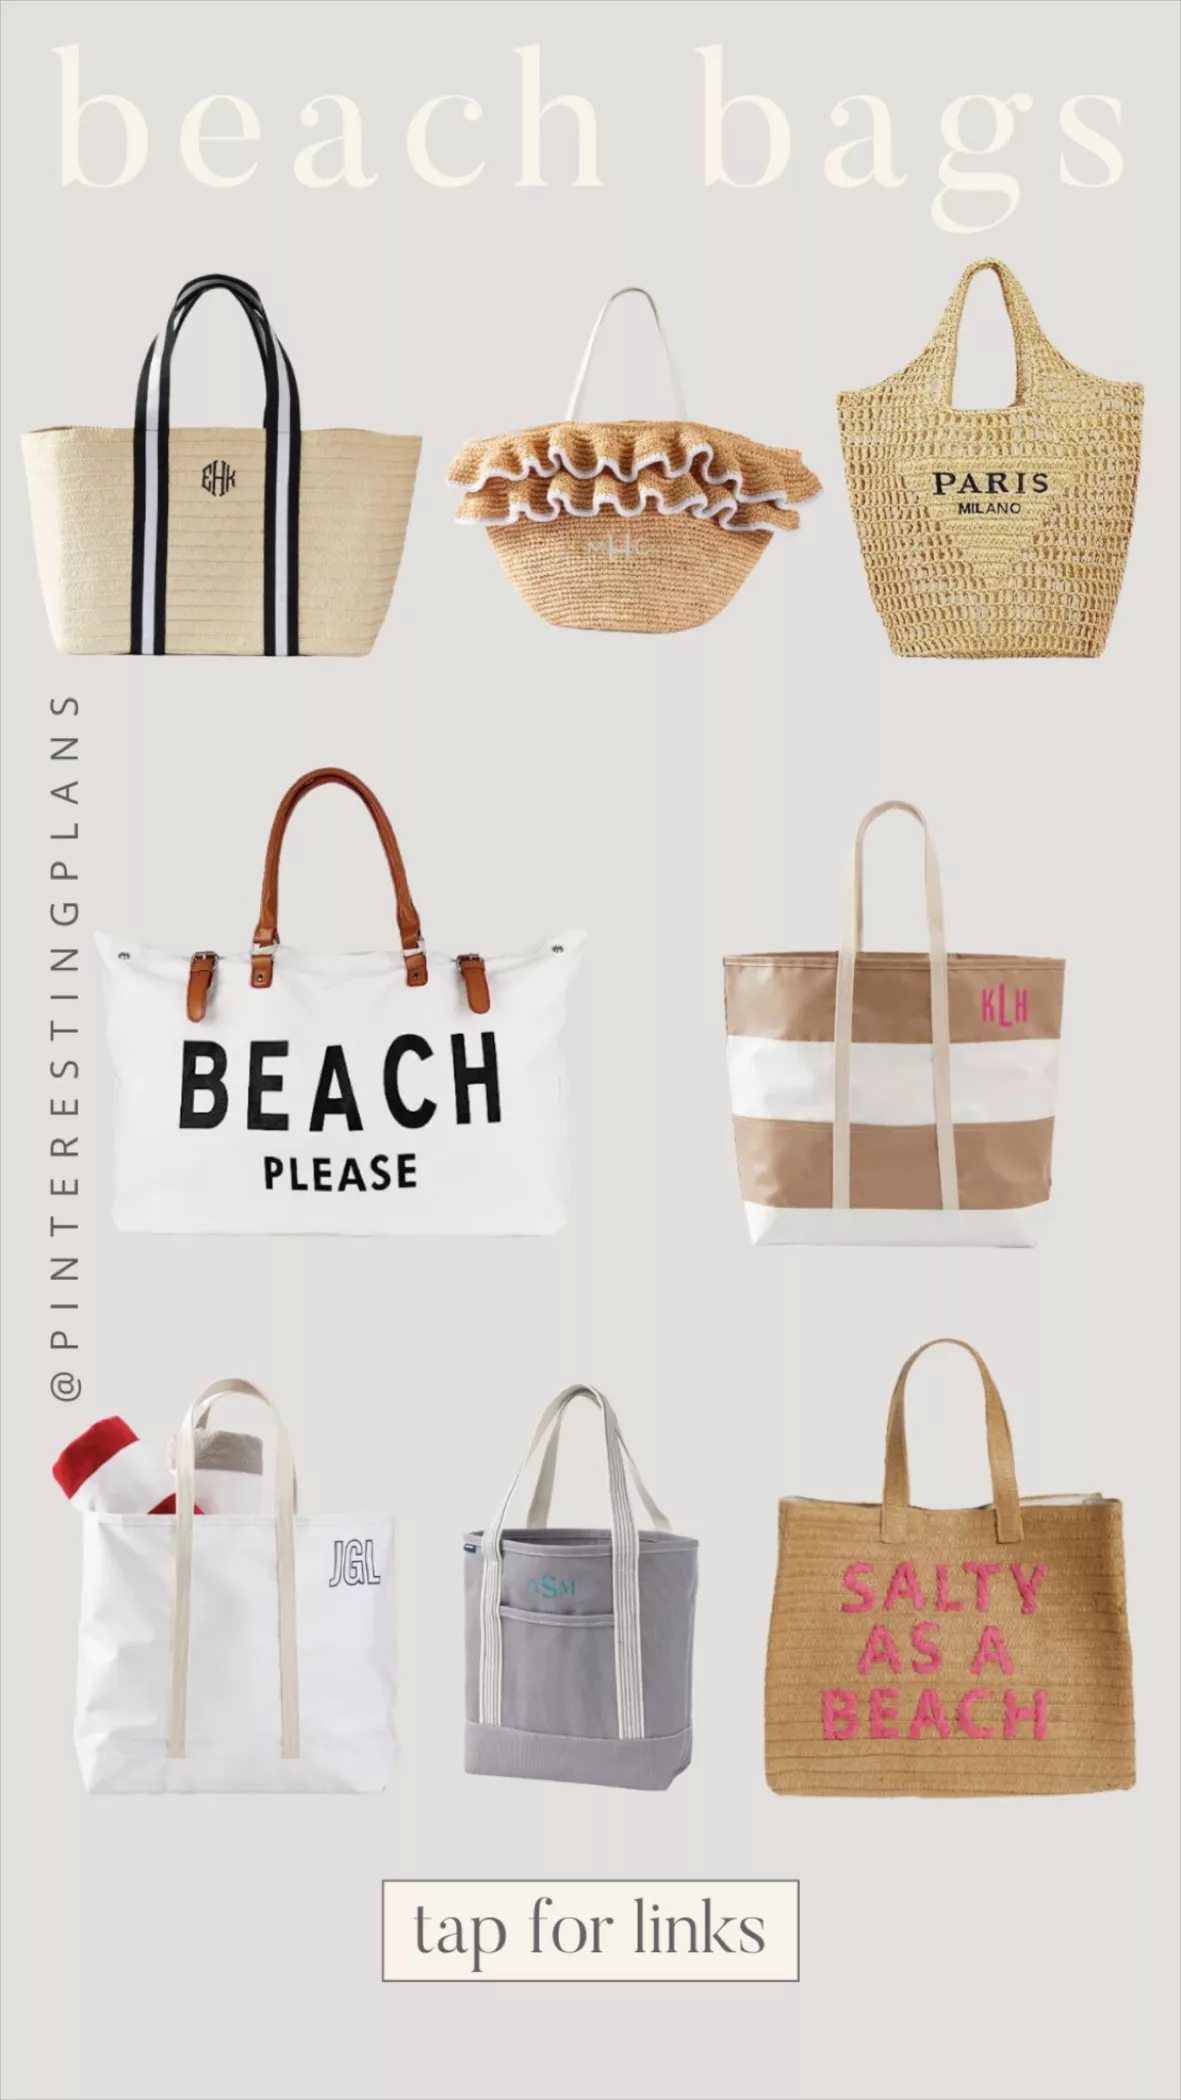 Lamyba Beach Bag, Canvas Beach Tote Bags for Women, Black and White